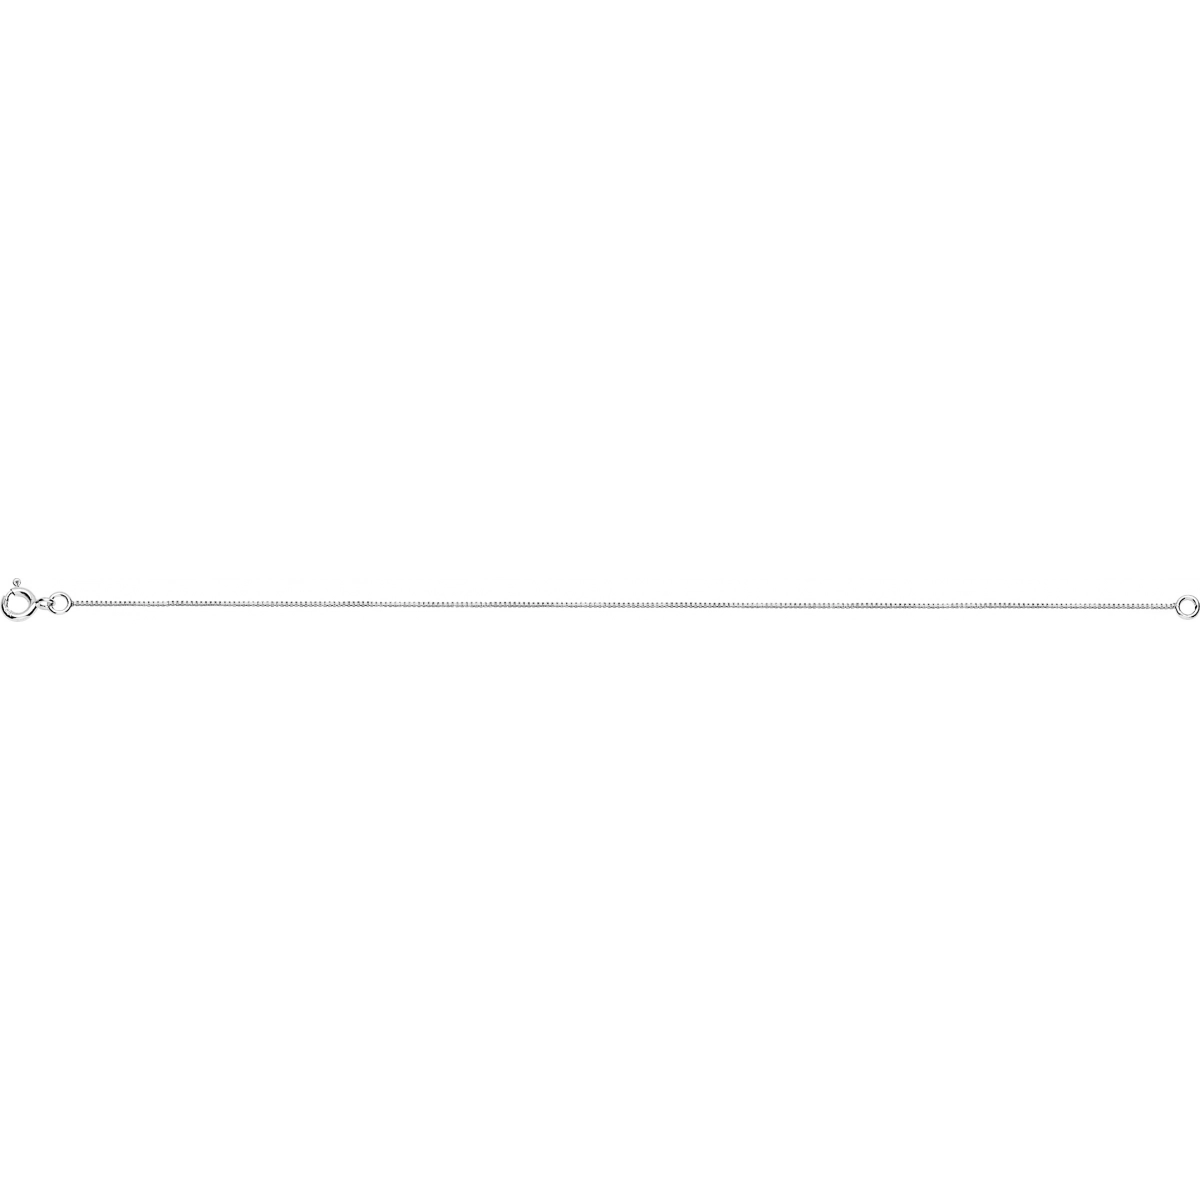 Necklace 'venitian chain' 18K WG - Size: 40  Lua Blanca  VE2G.40